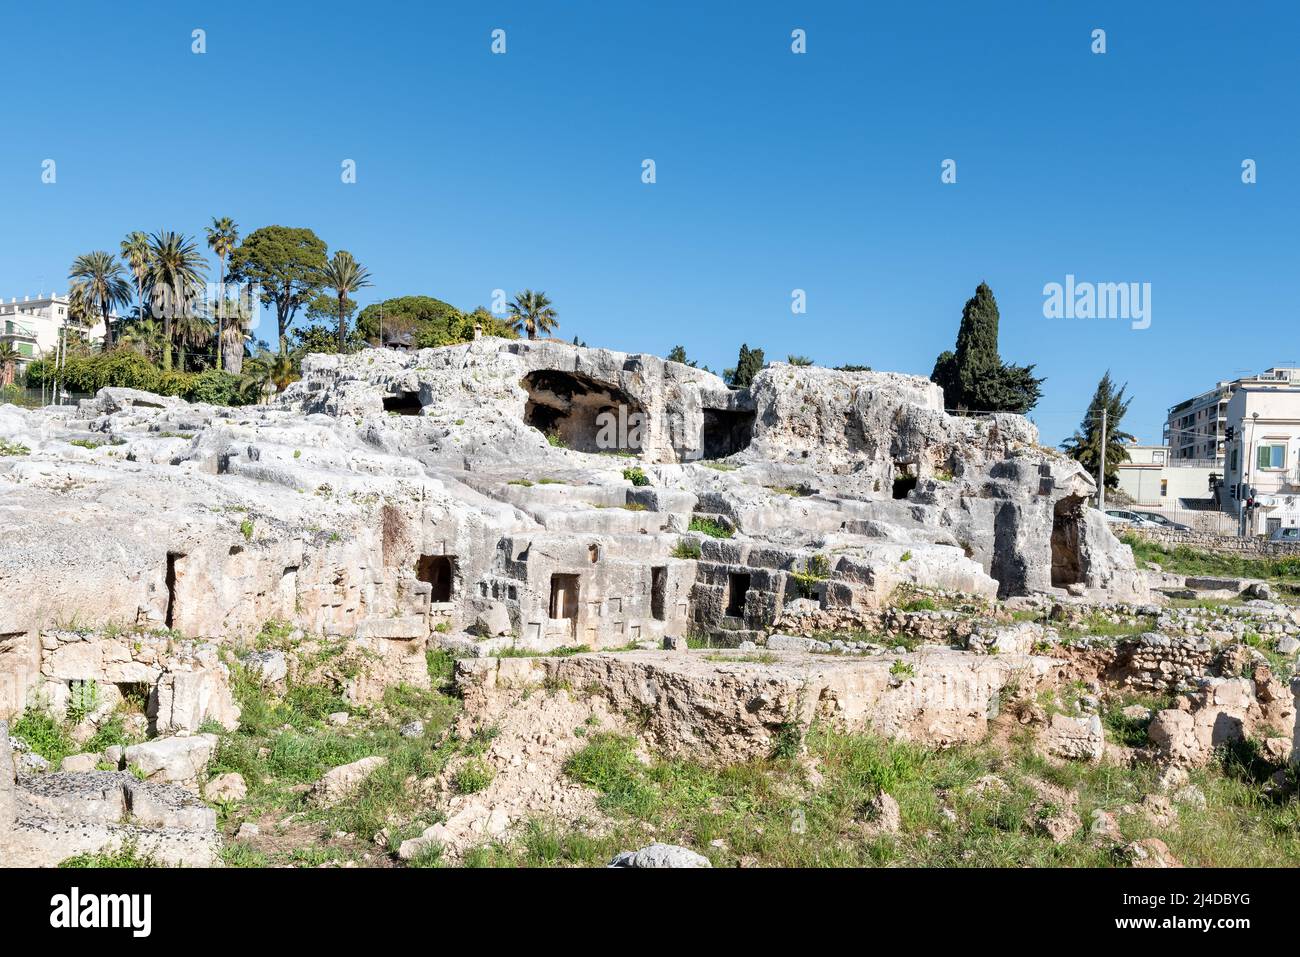 La necropoli dei Grotticelli (cimitero) degli antichi Greci di Siracusa, in Sicilia. Le rovine dove Archimede dovrebbe essere sepolto. Foto Stock